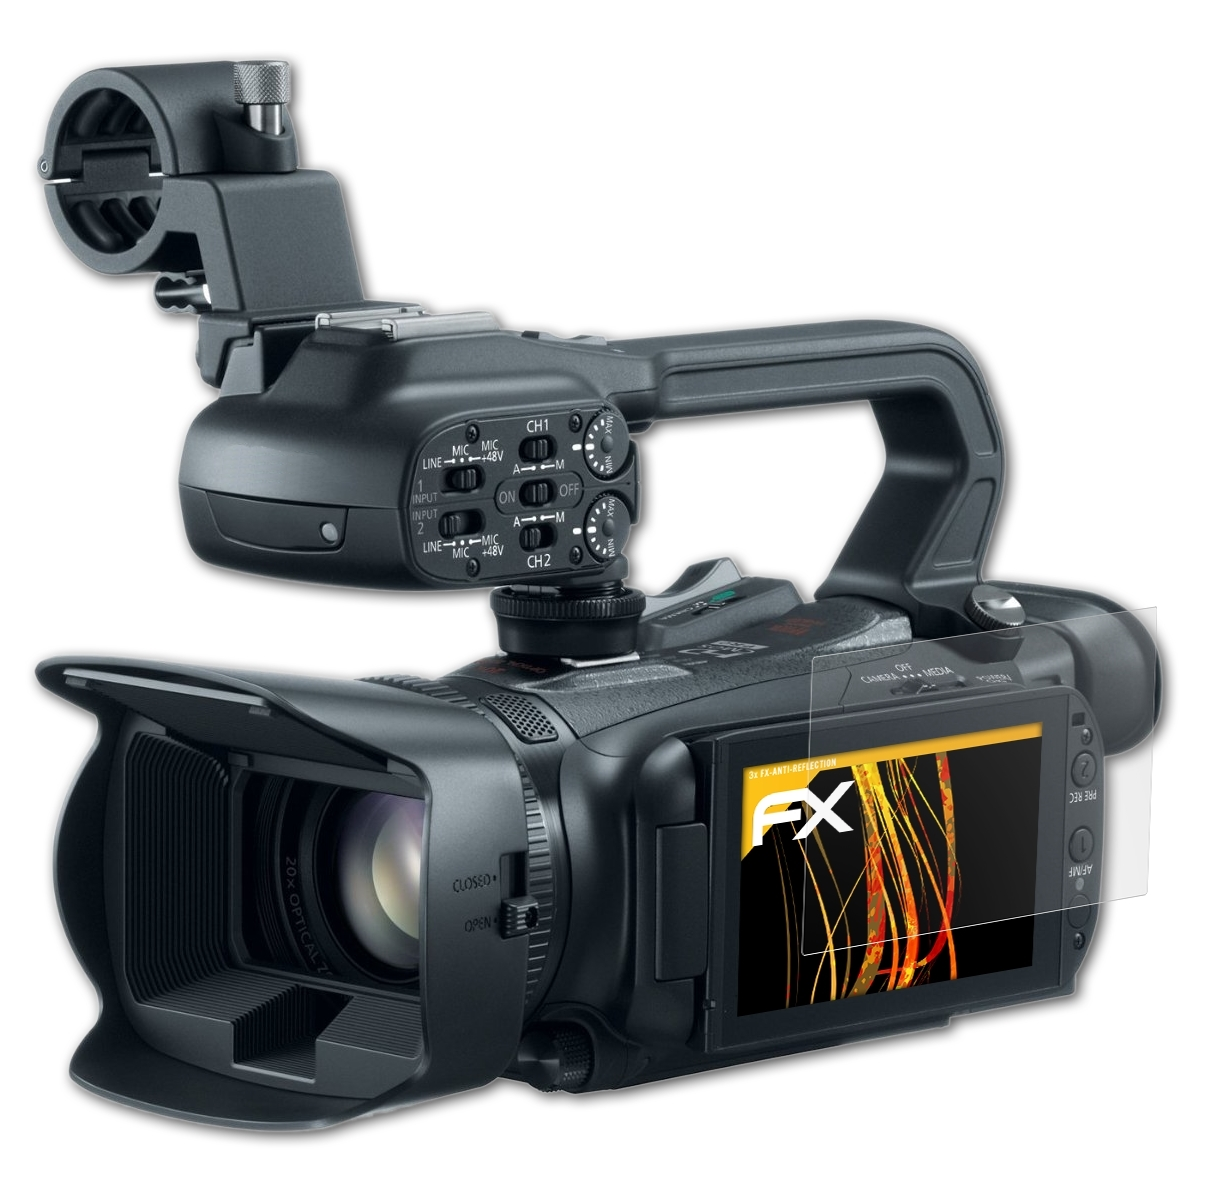 Canon Displayschutz(für 3x FX-Antireflex XA20) ATFOLIX